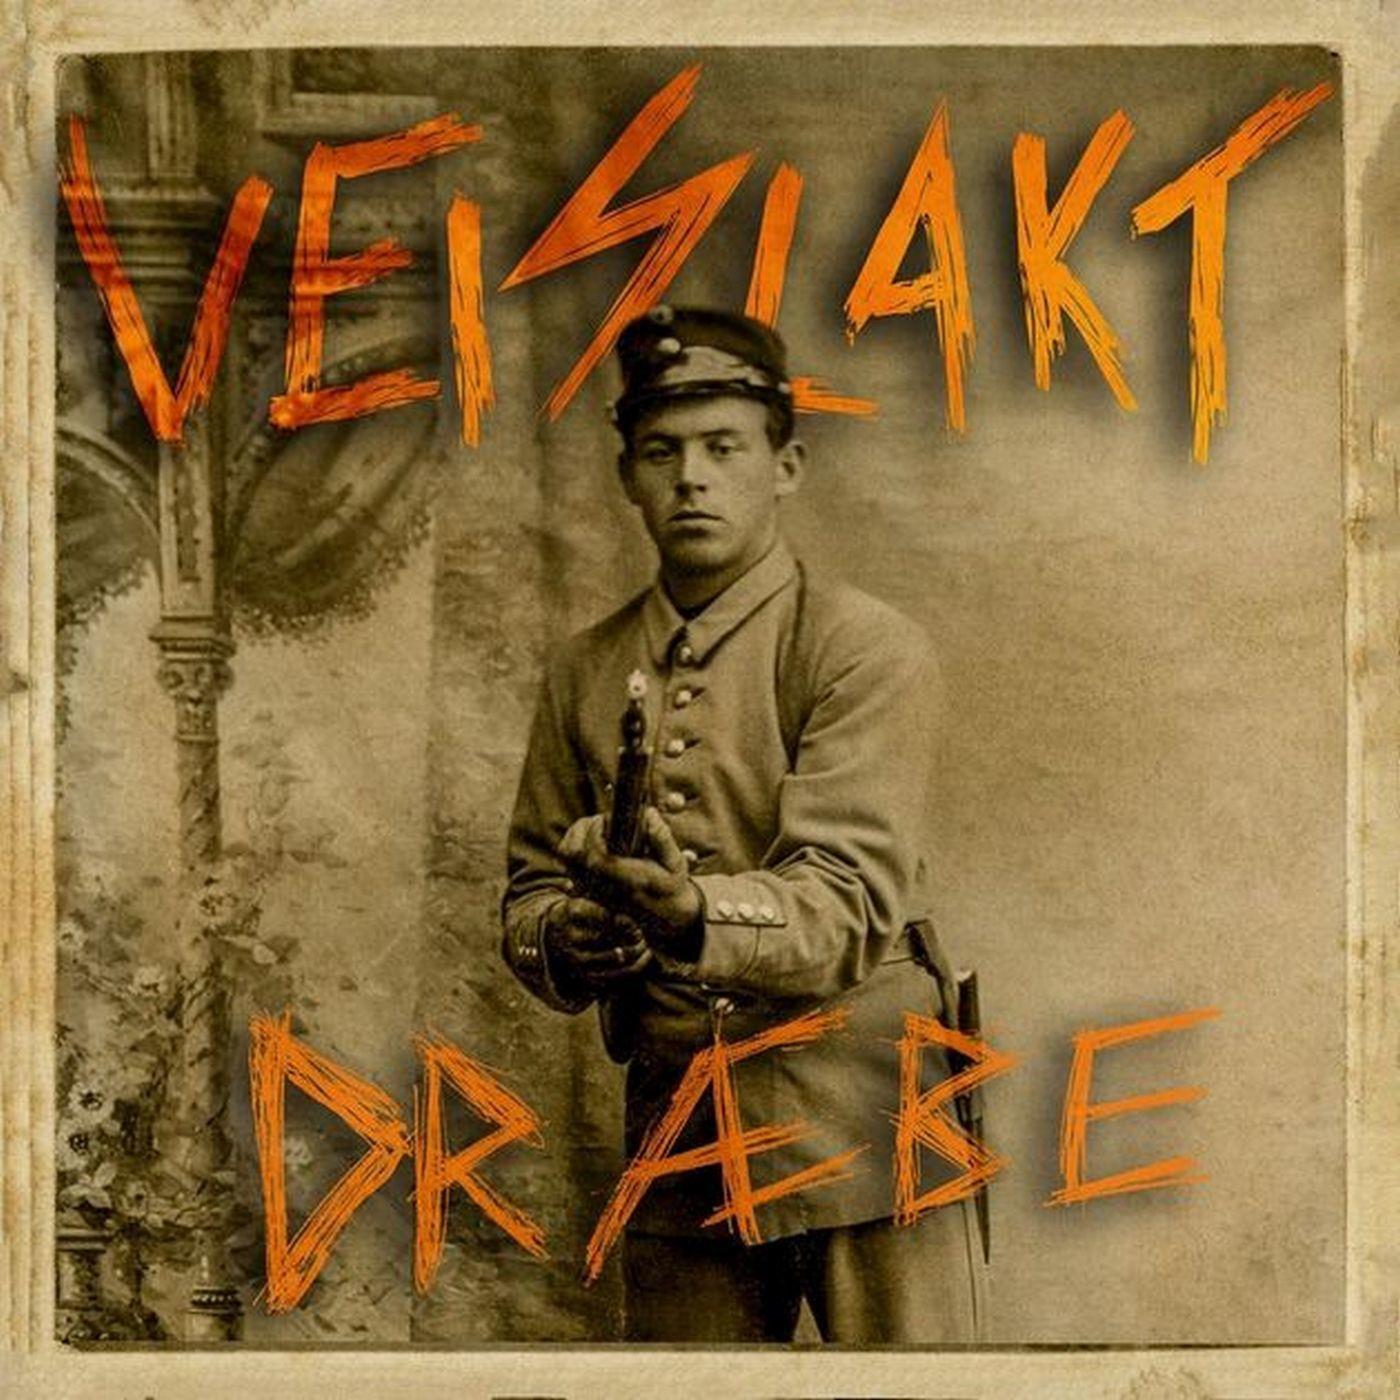 Veislakt - Dræbe (CD)